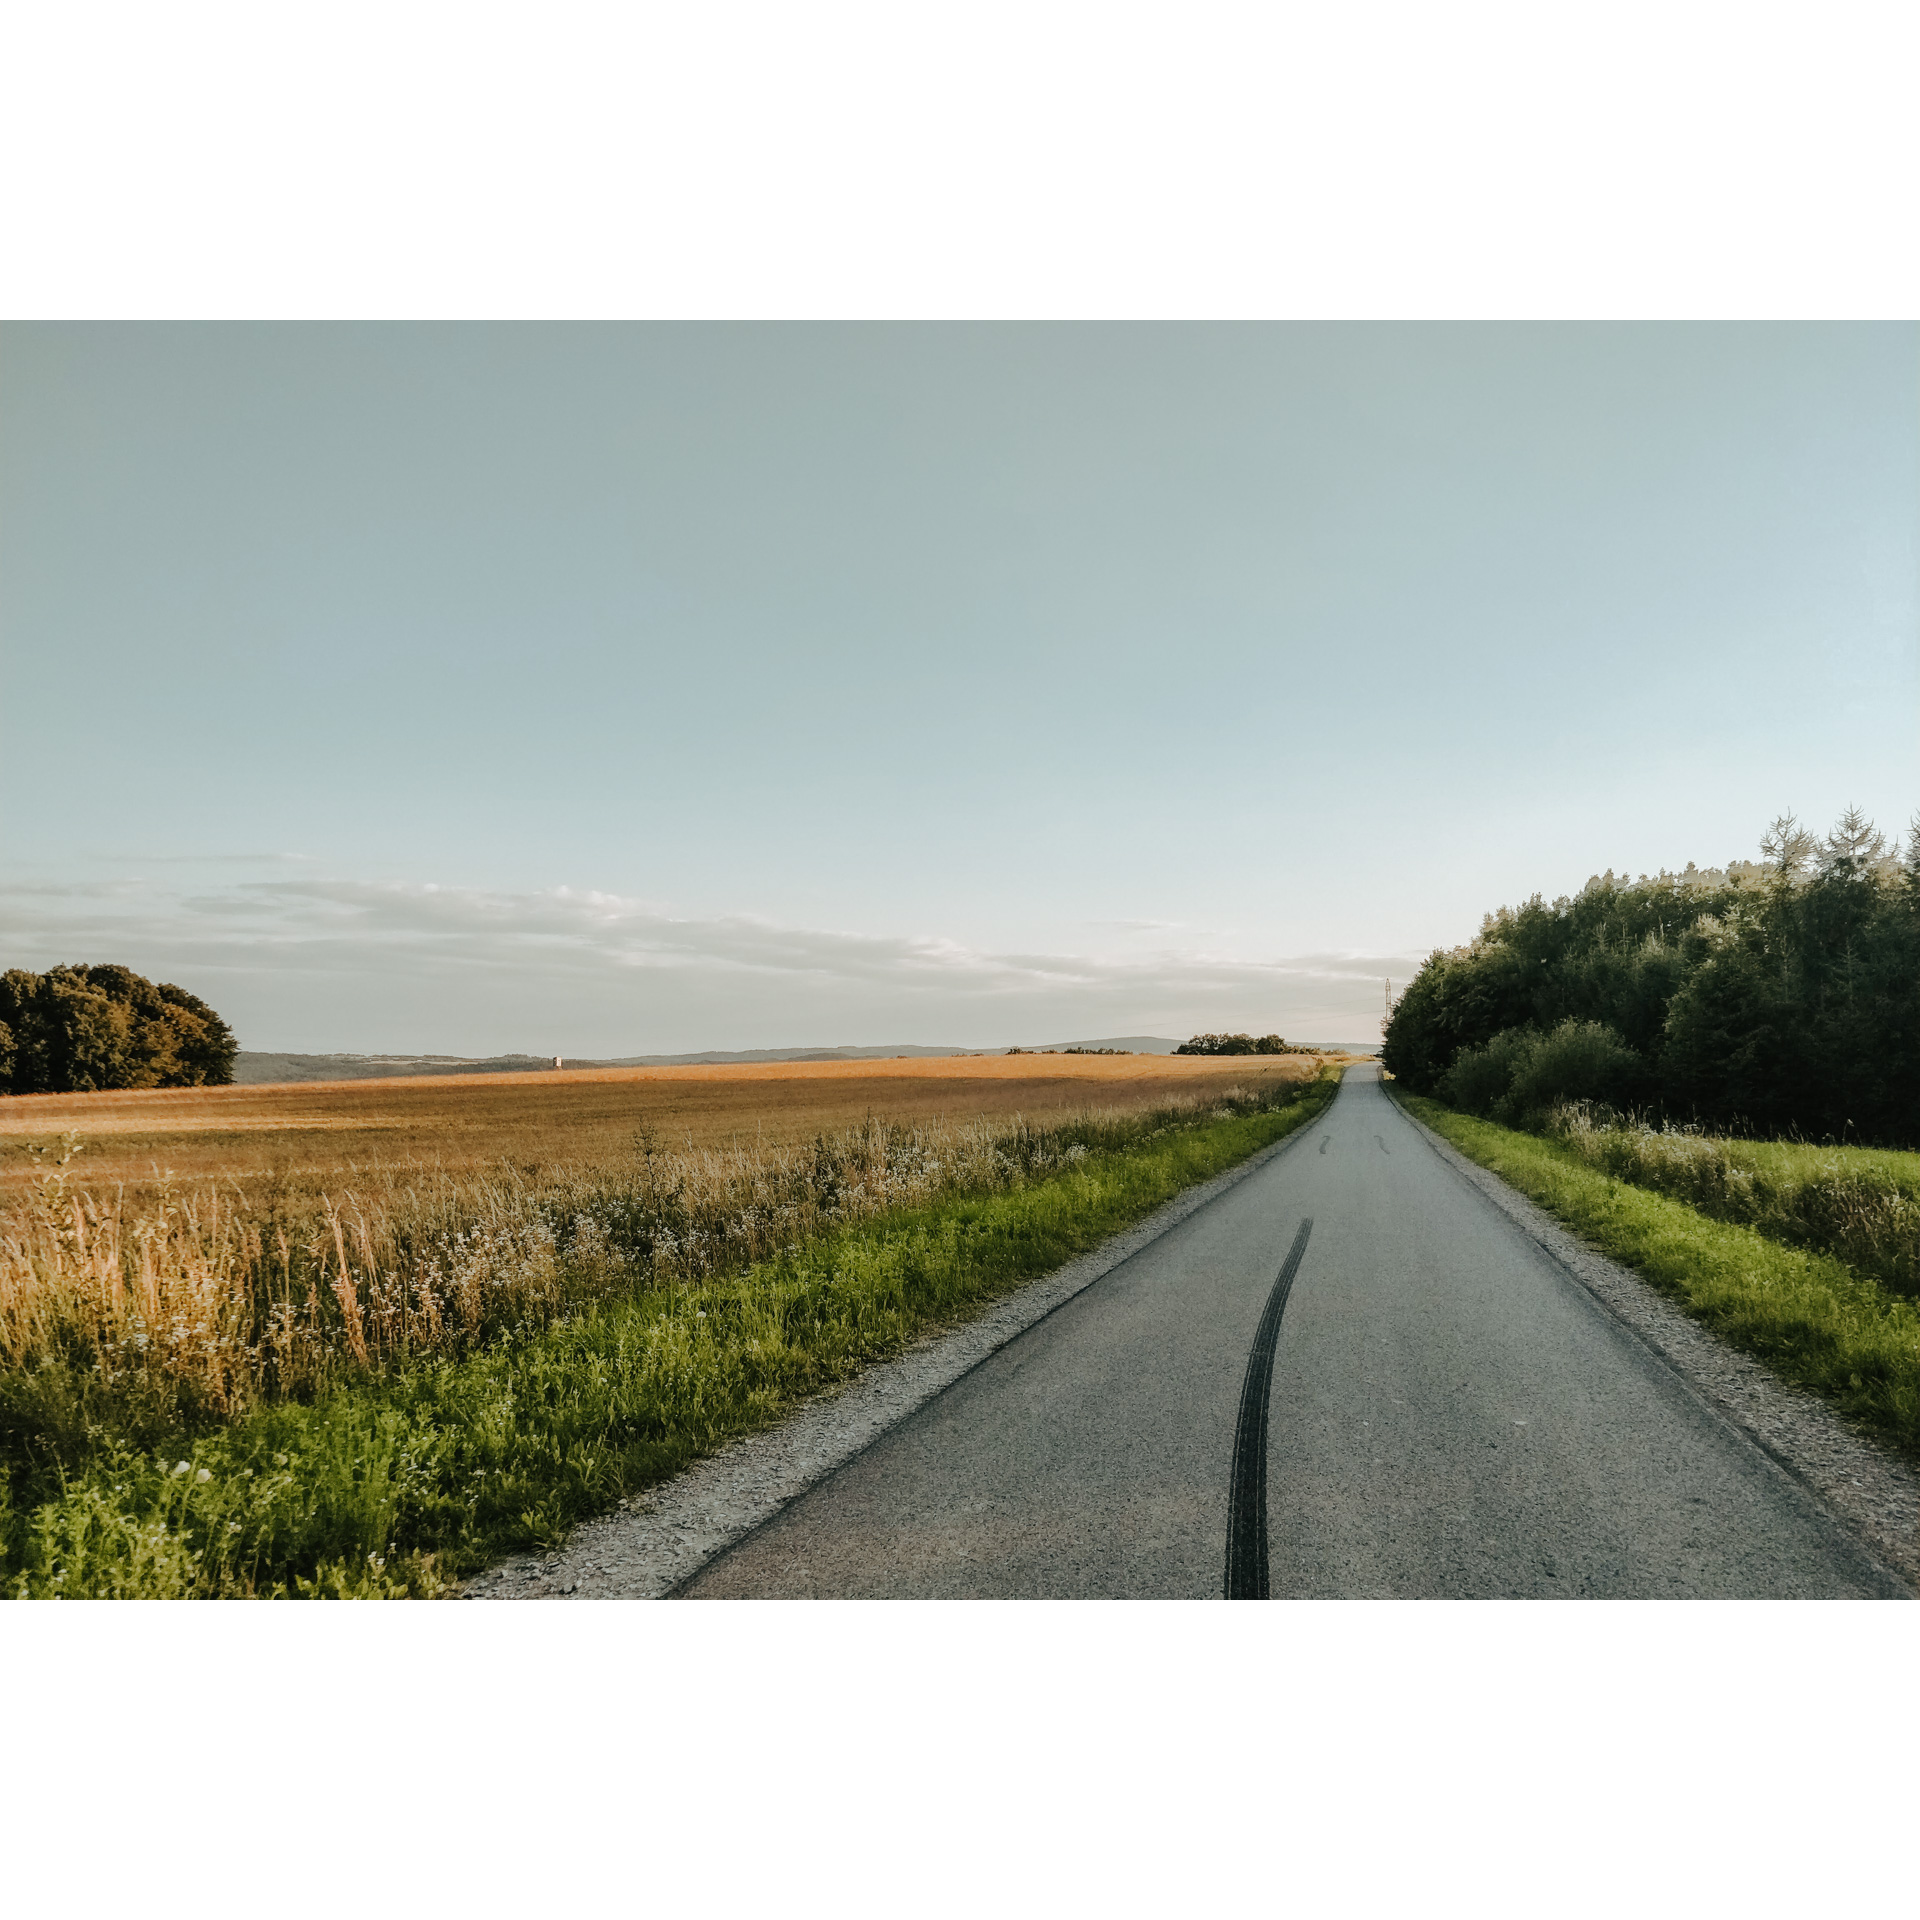 Droga asfaltowa z łąką pełną złotych zbóż po lewej stronie i zielonymi drzewami po prawej stronie